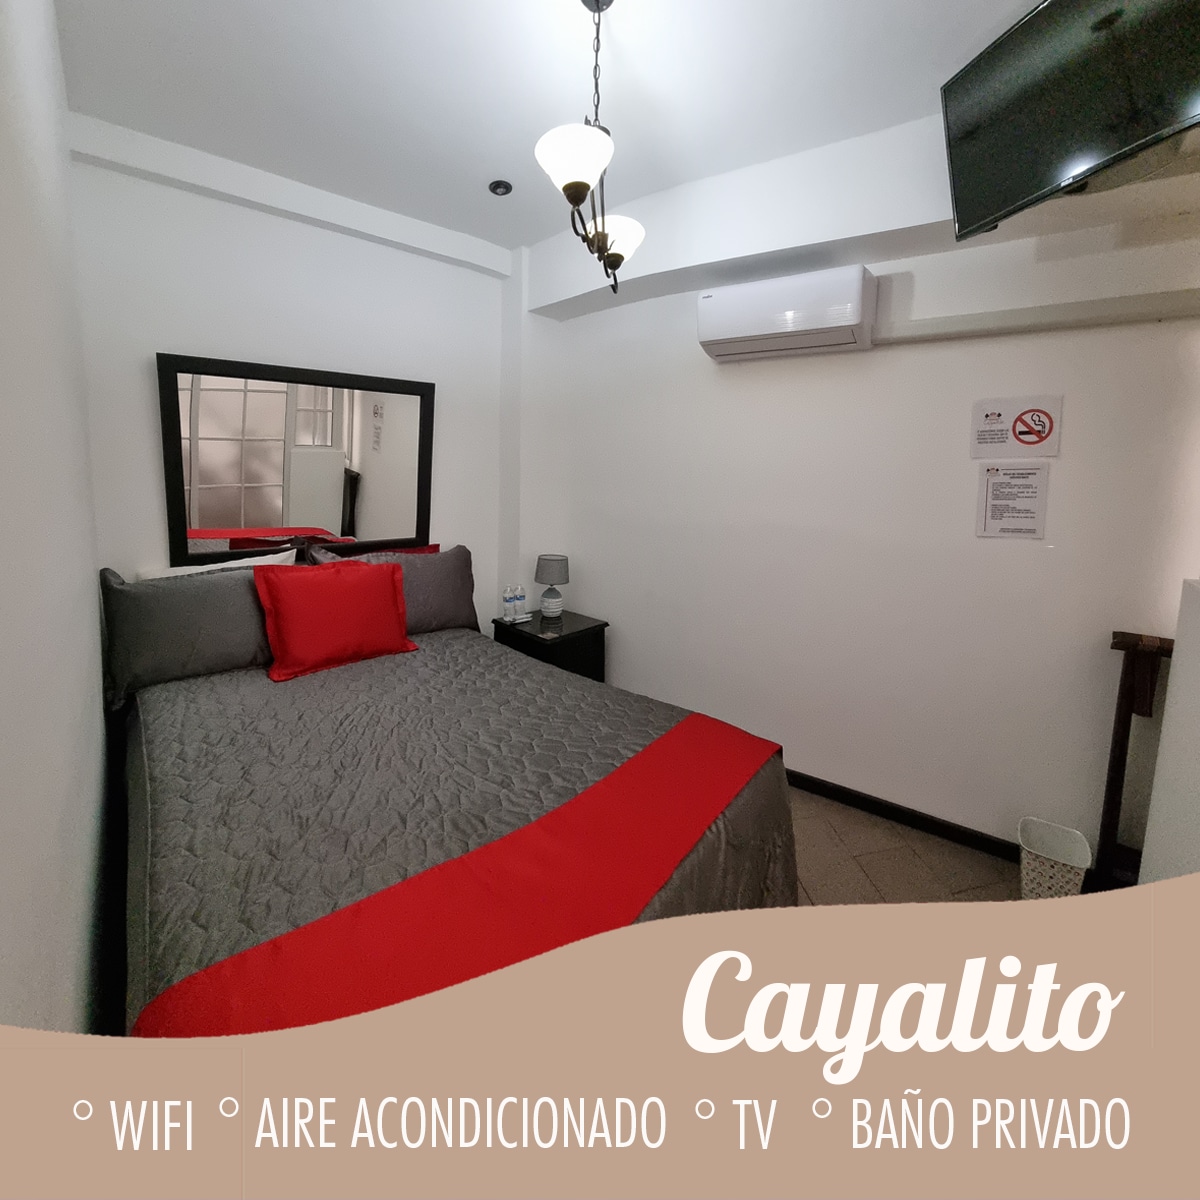 CAYALITO APART4 HOTEL